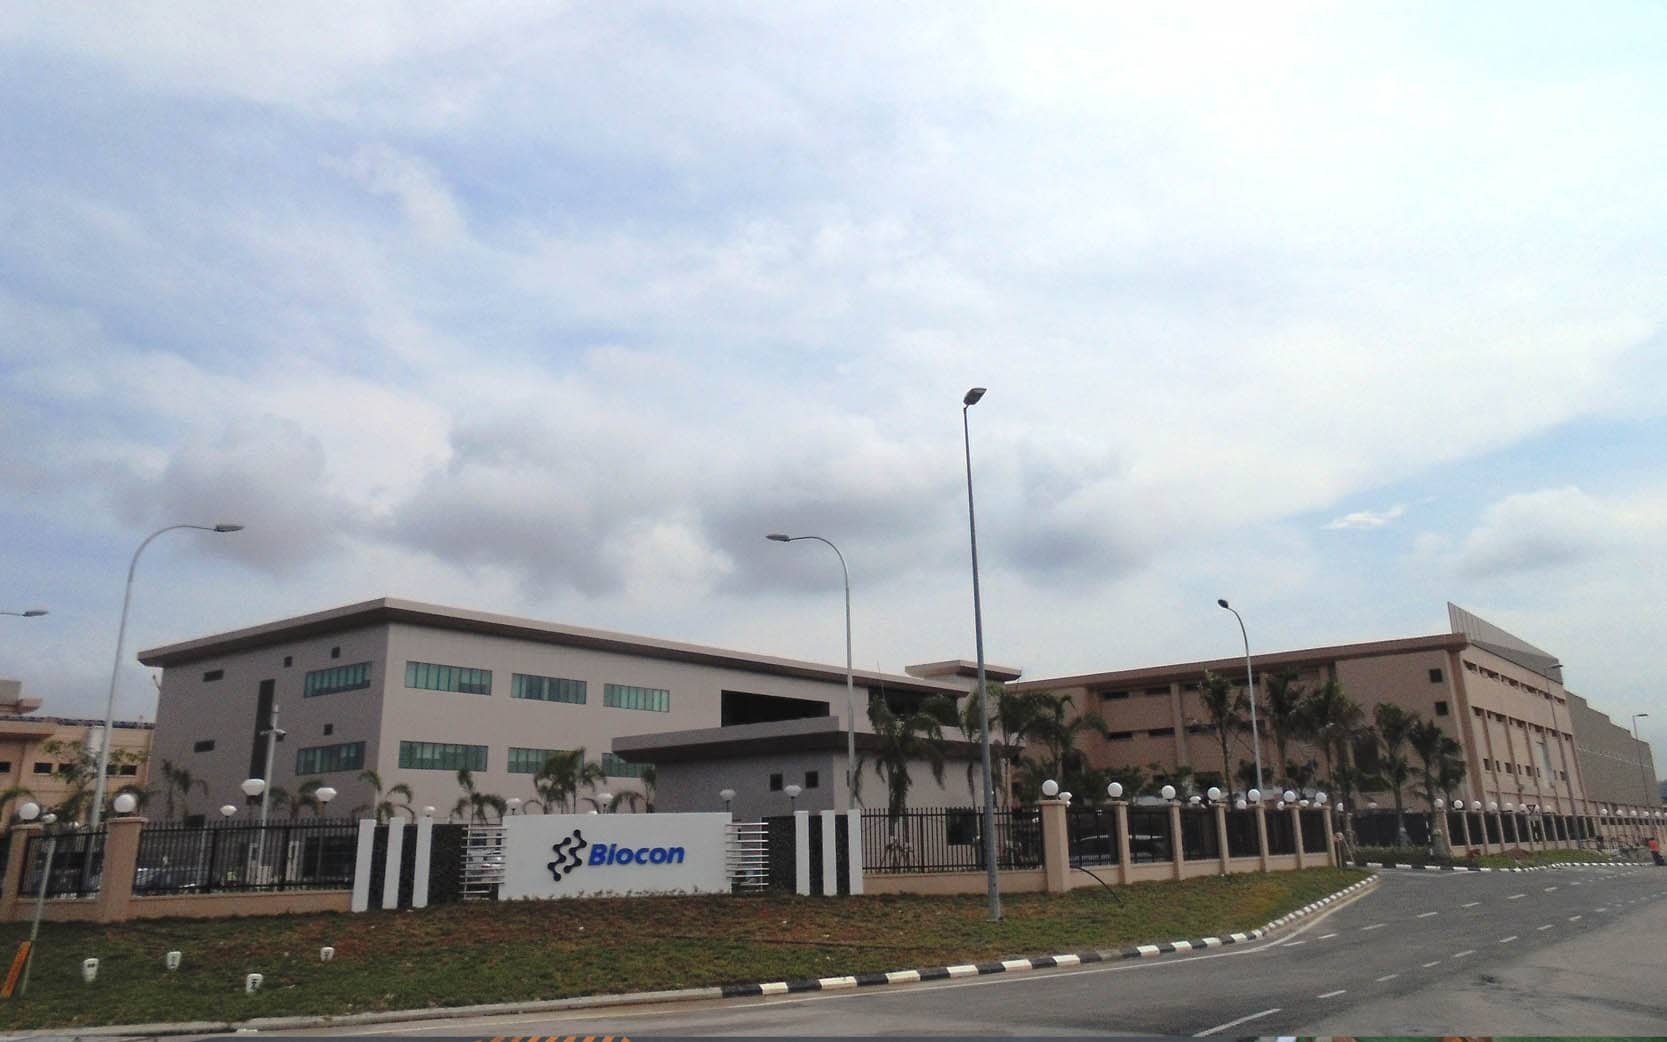 A Biocon Malaysia insulin manufacturing plant.